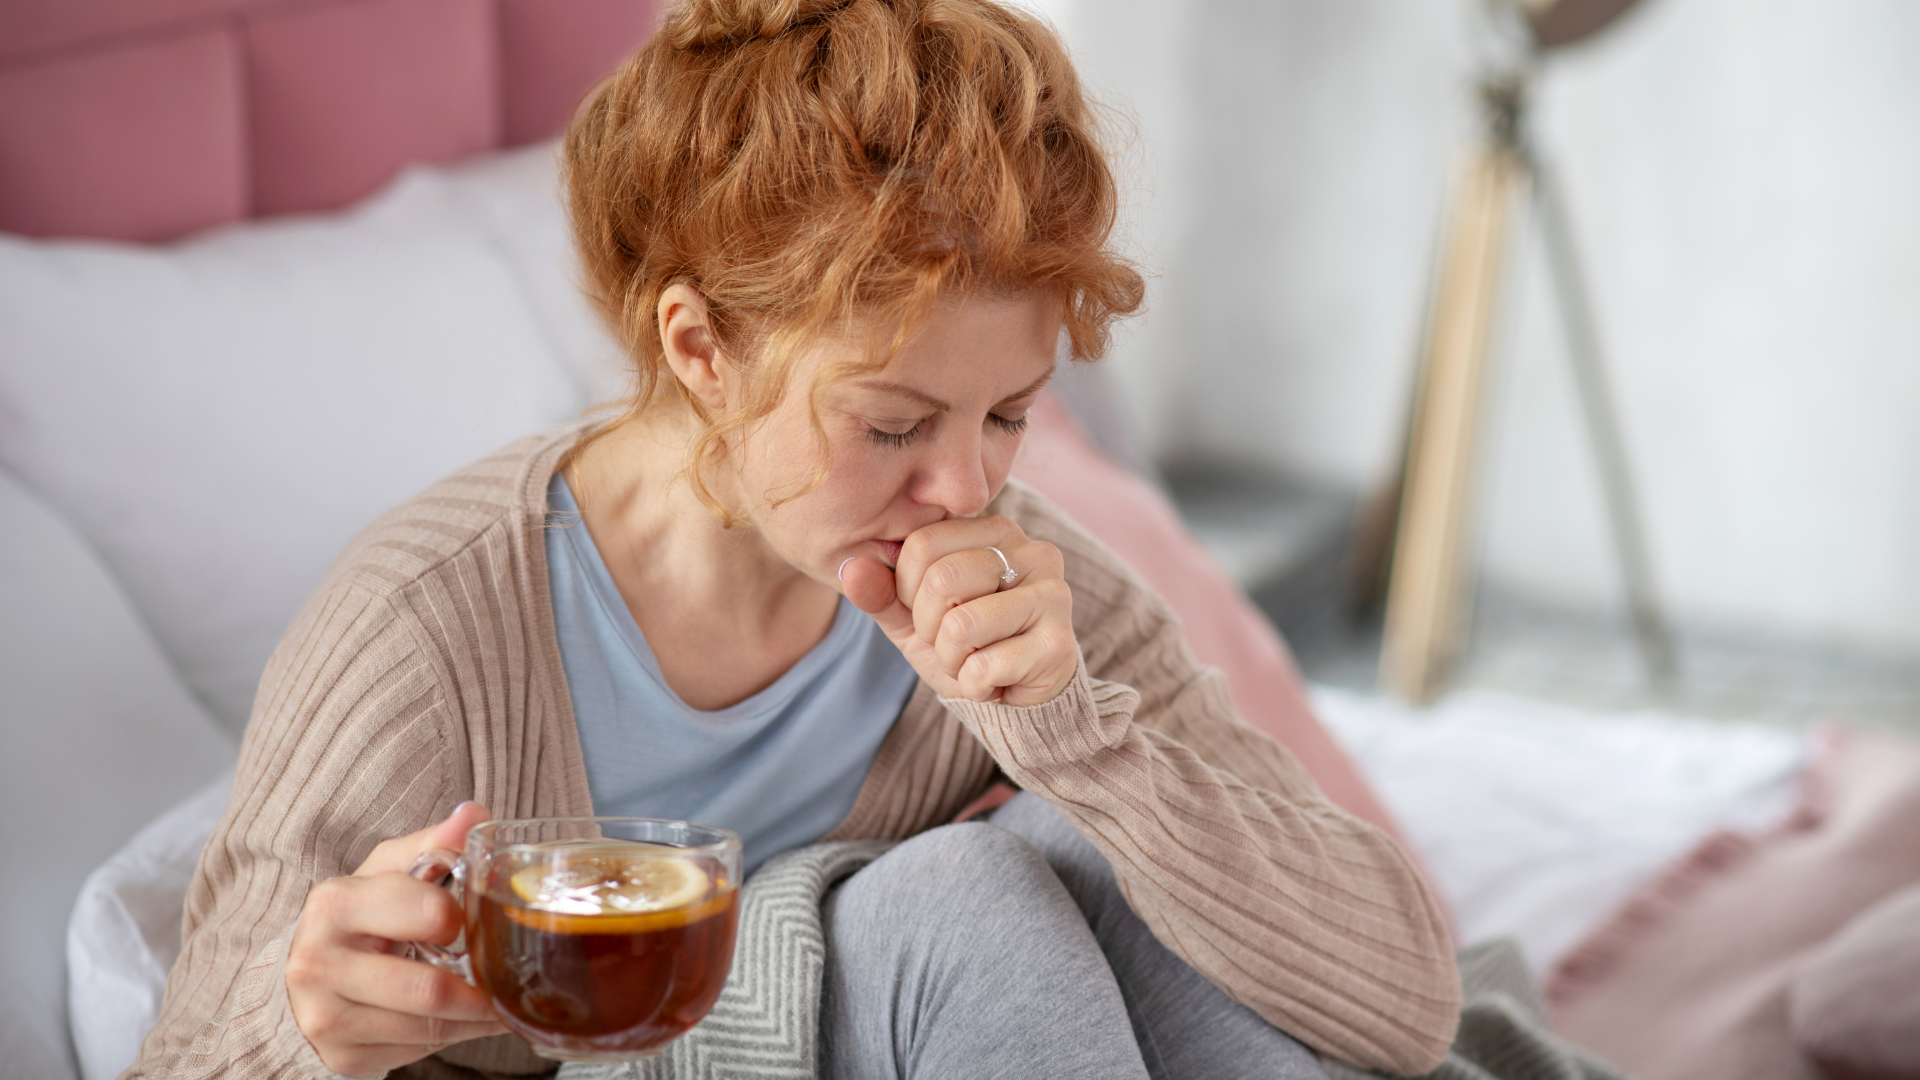 Foto de capa do artigo "Remédio caseiro para tosse: o que tomar para aliviar o sintoma?"